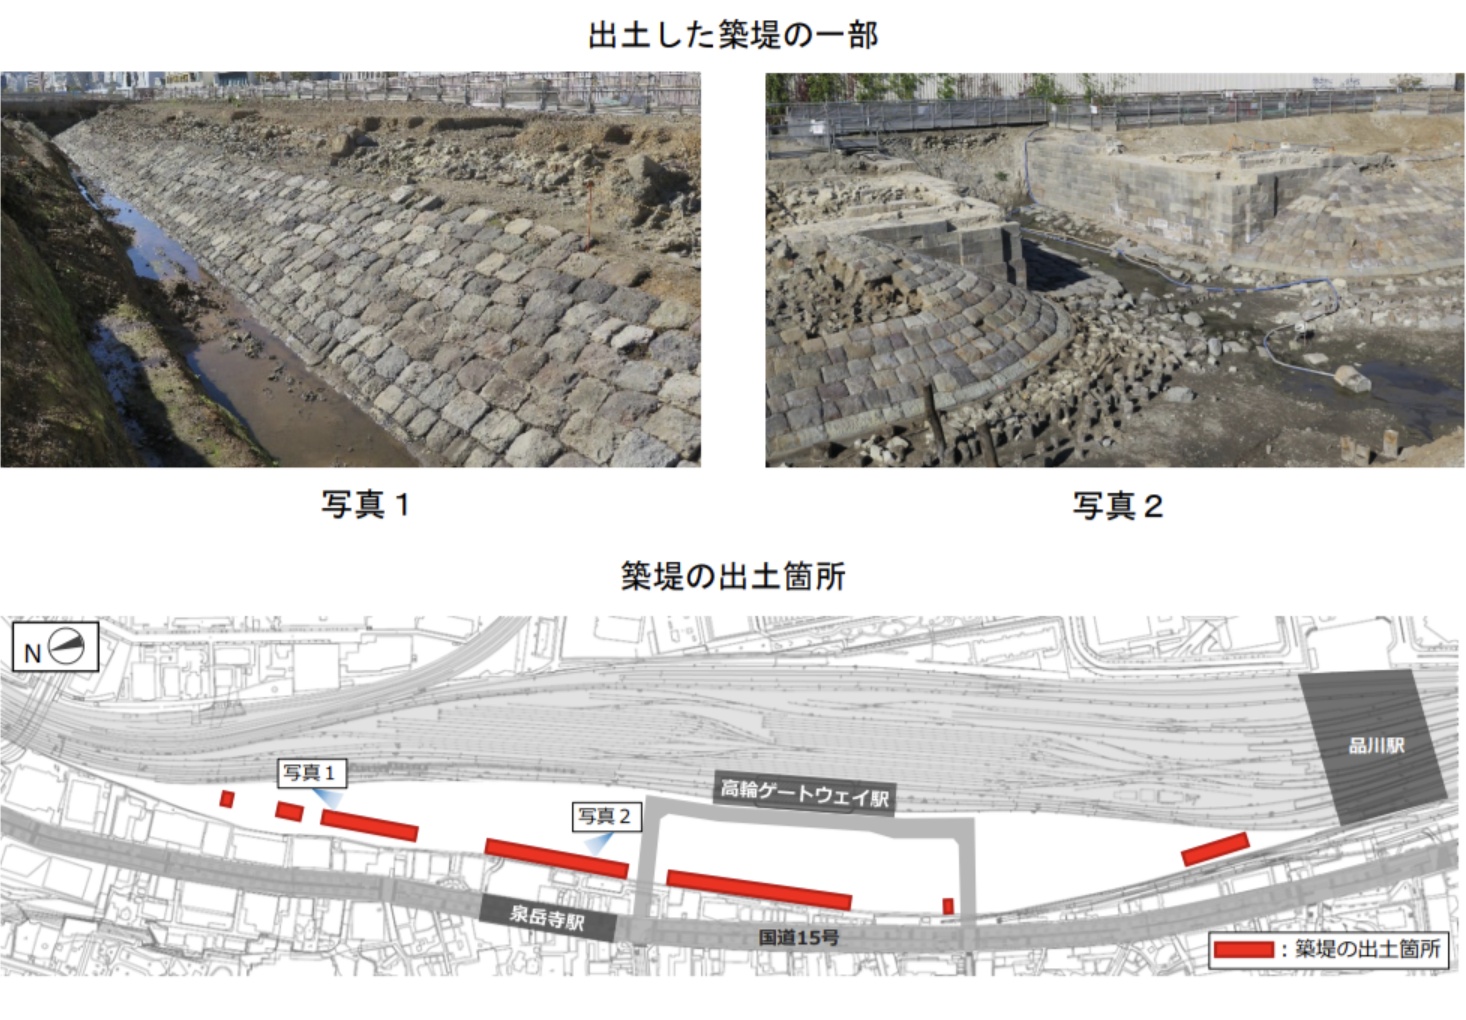 【JR東日本】明治初期の遺構｢高輪築堤｣の出土について正式に発表 保存や公開展示を検討